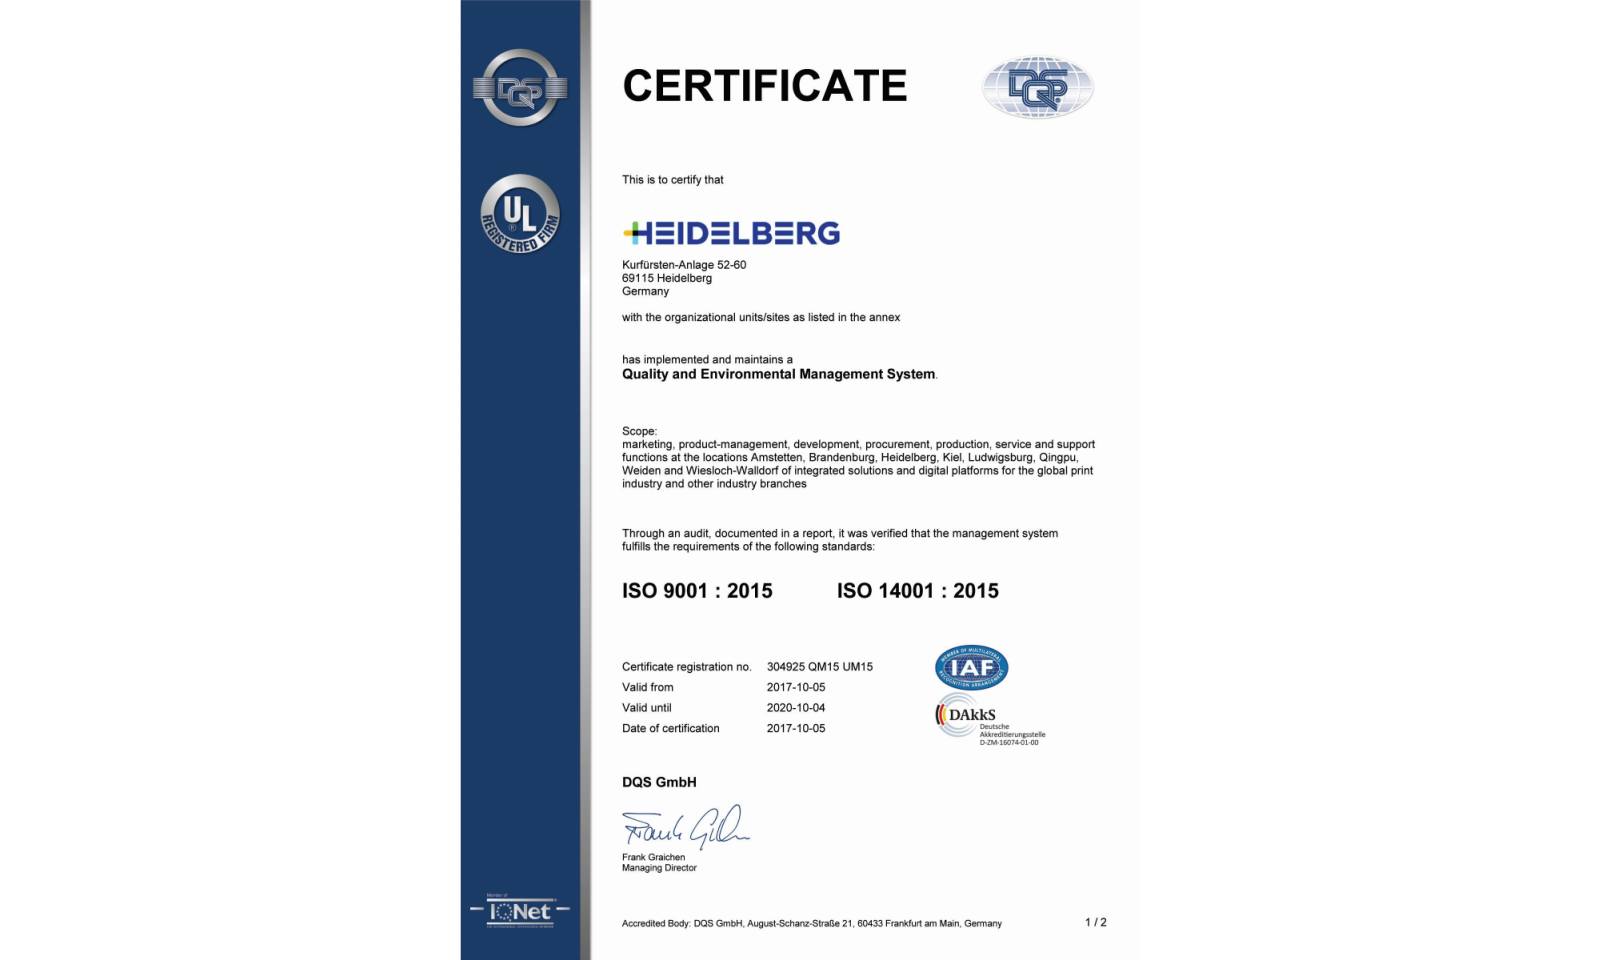 Компания Heidelberg успешно завершила сертификацию систем управления по новым международным стандартам ISO 9001:2015 и ISO 14001:2015